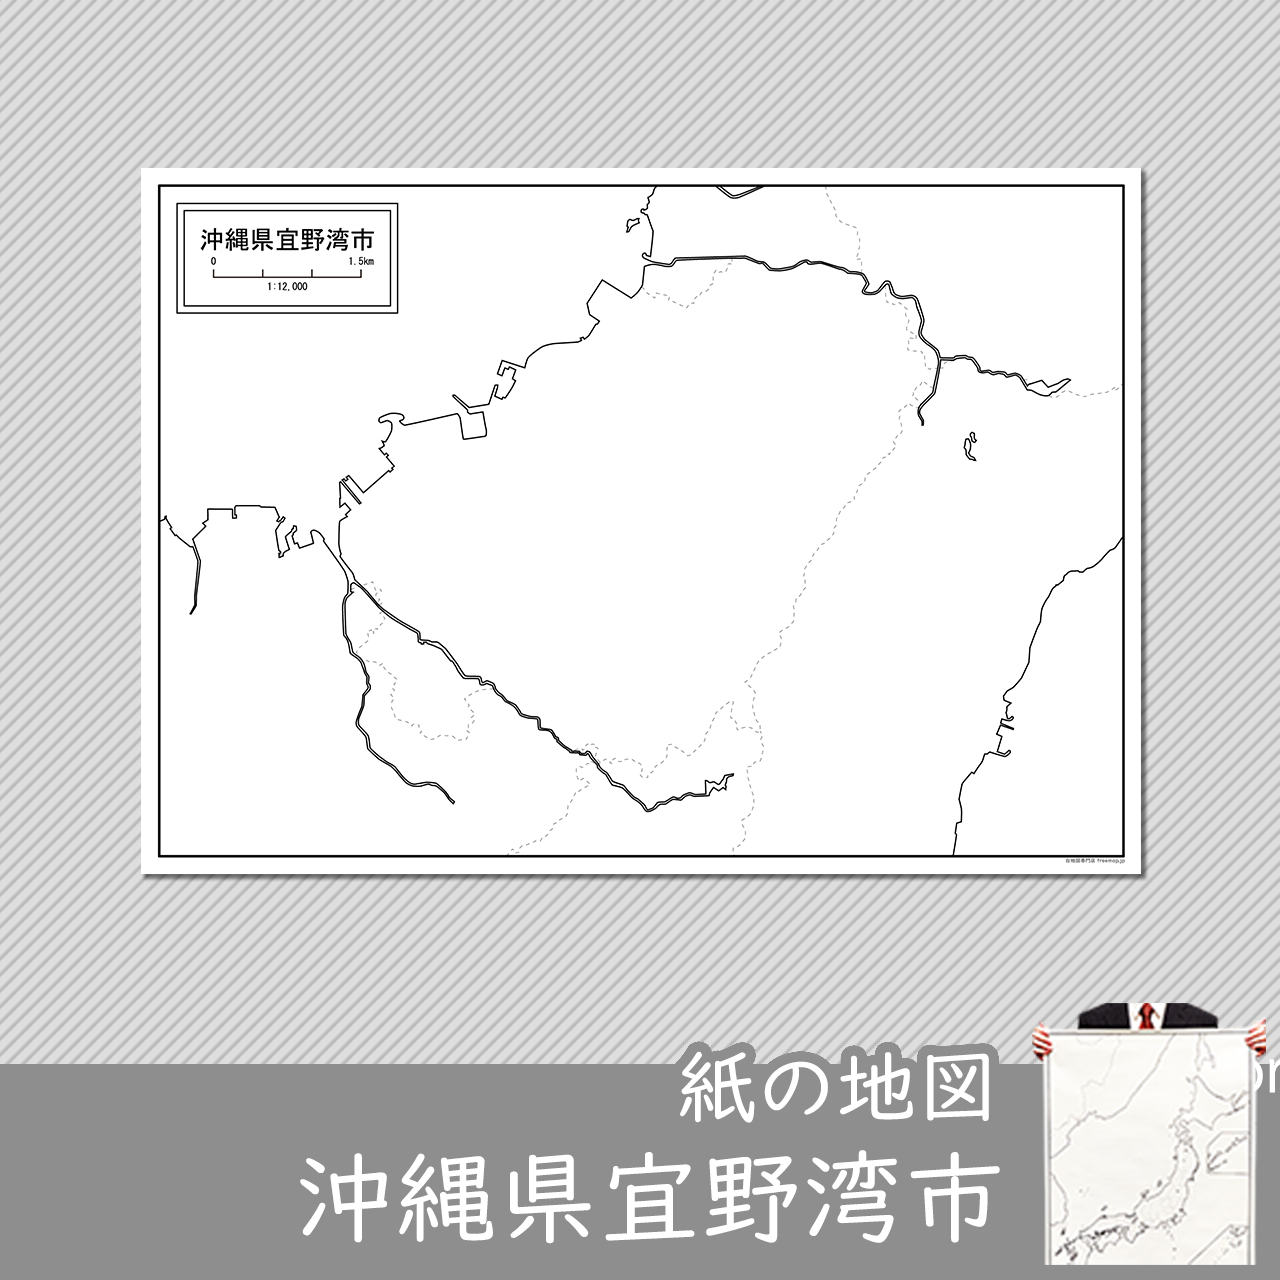 宜野湾市の紙の白地図のサムネイル